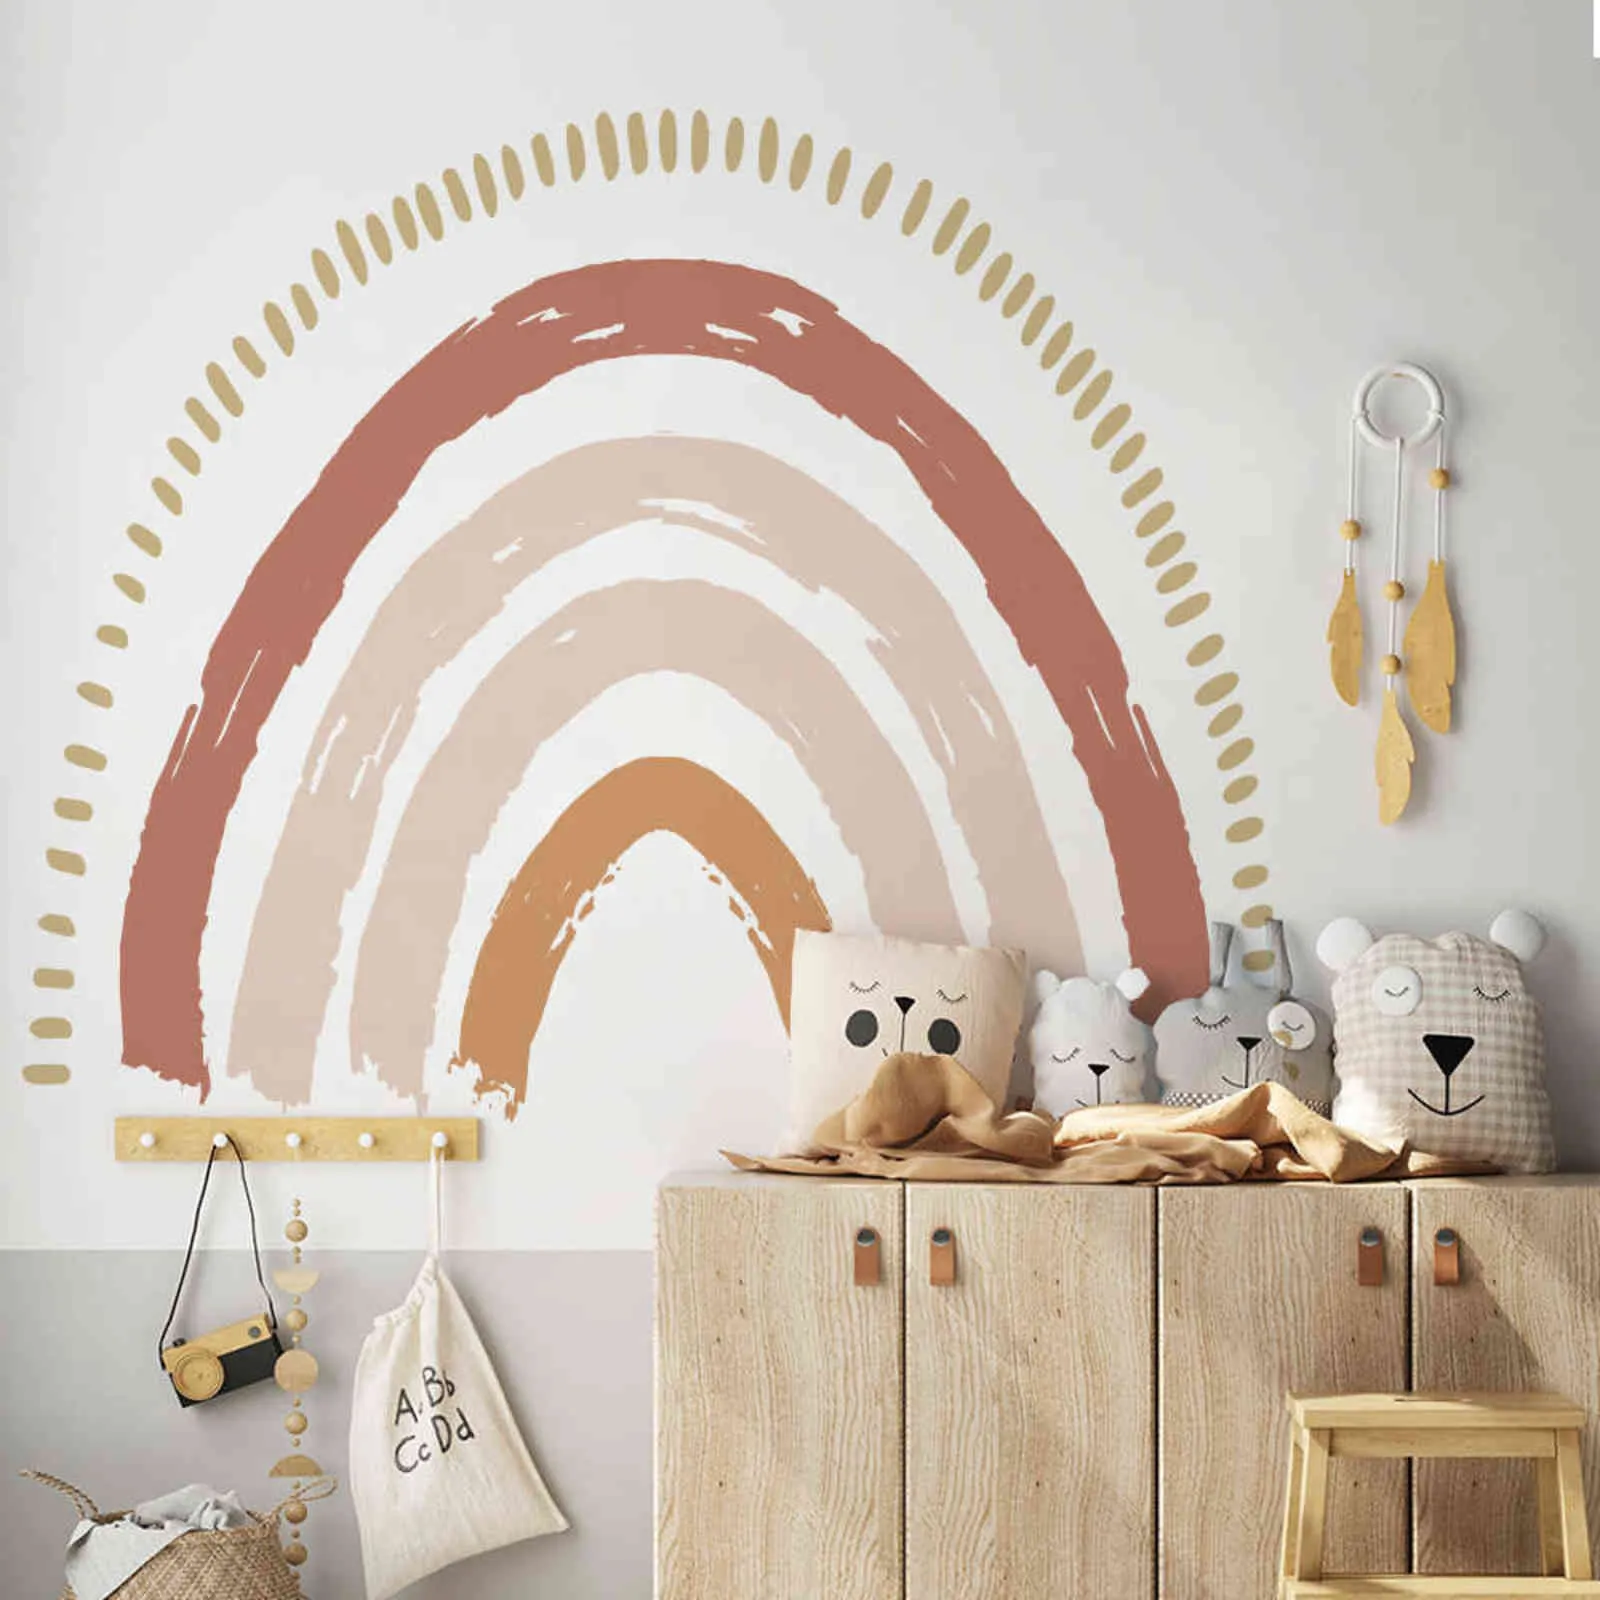 Grande arcobaleno Acquerello Home Decor Wall Sticker Autoadesivo per la camera dei bambini Soggiorno Nursery Decalcomanie Nordic Kid Stickers 211112